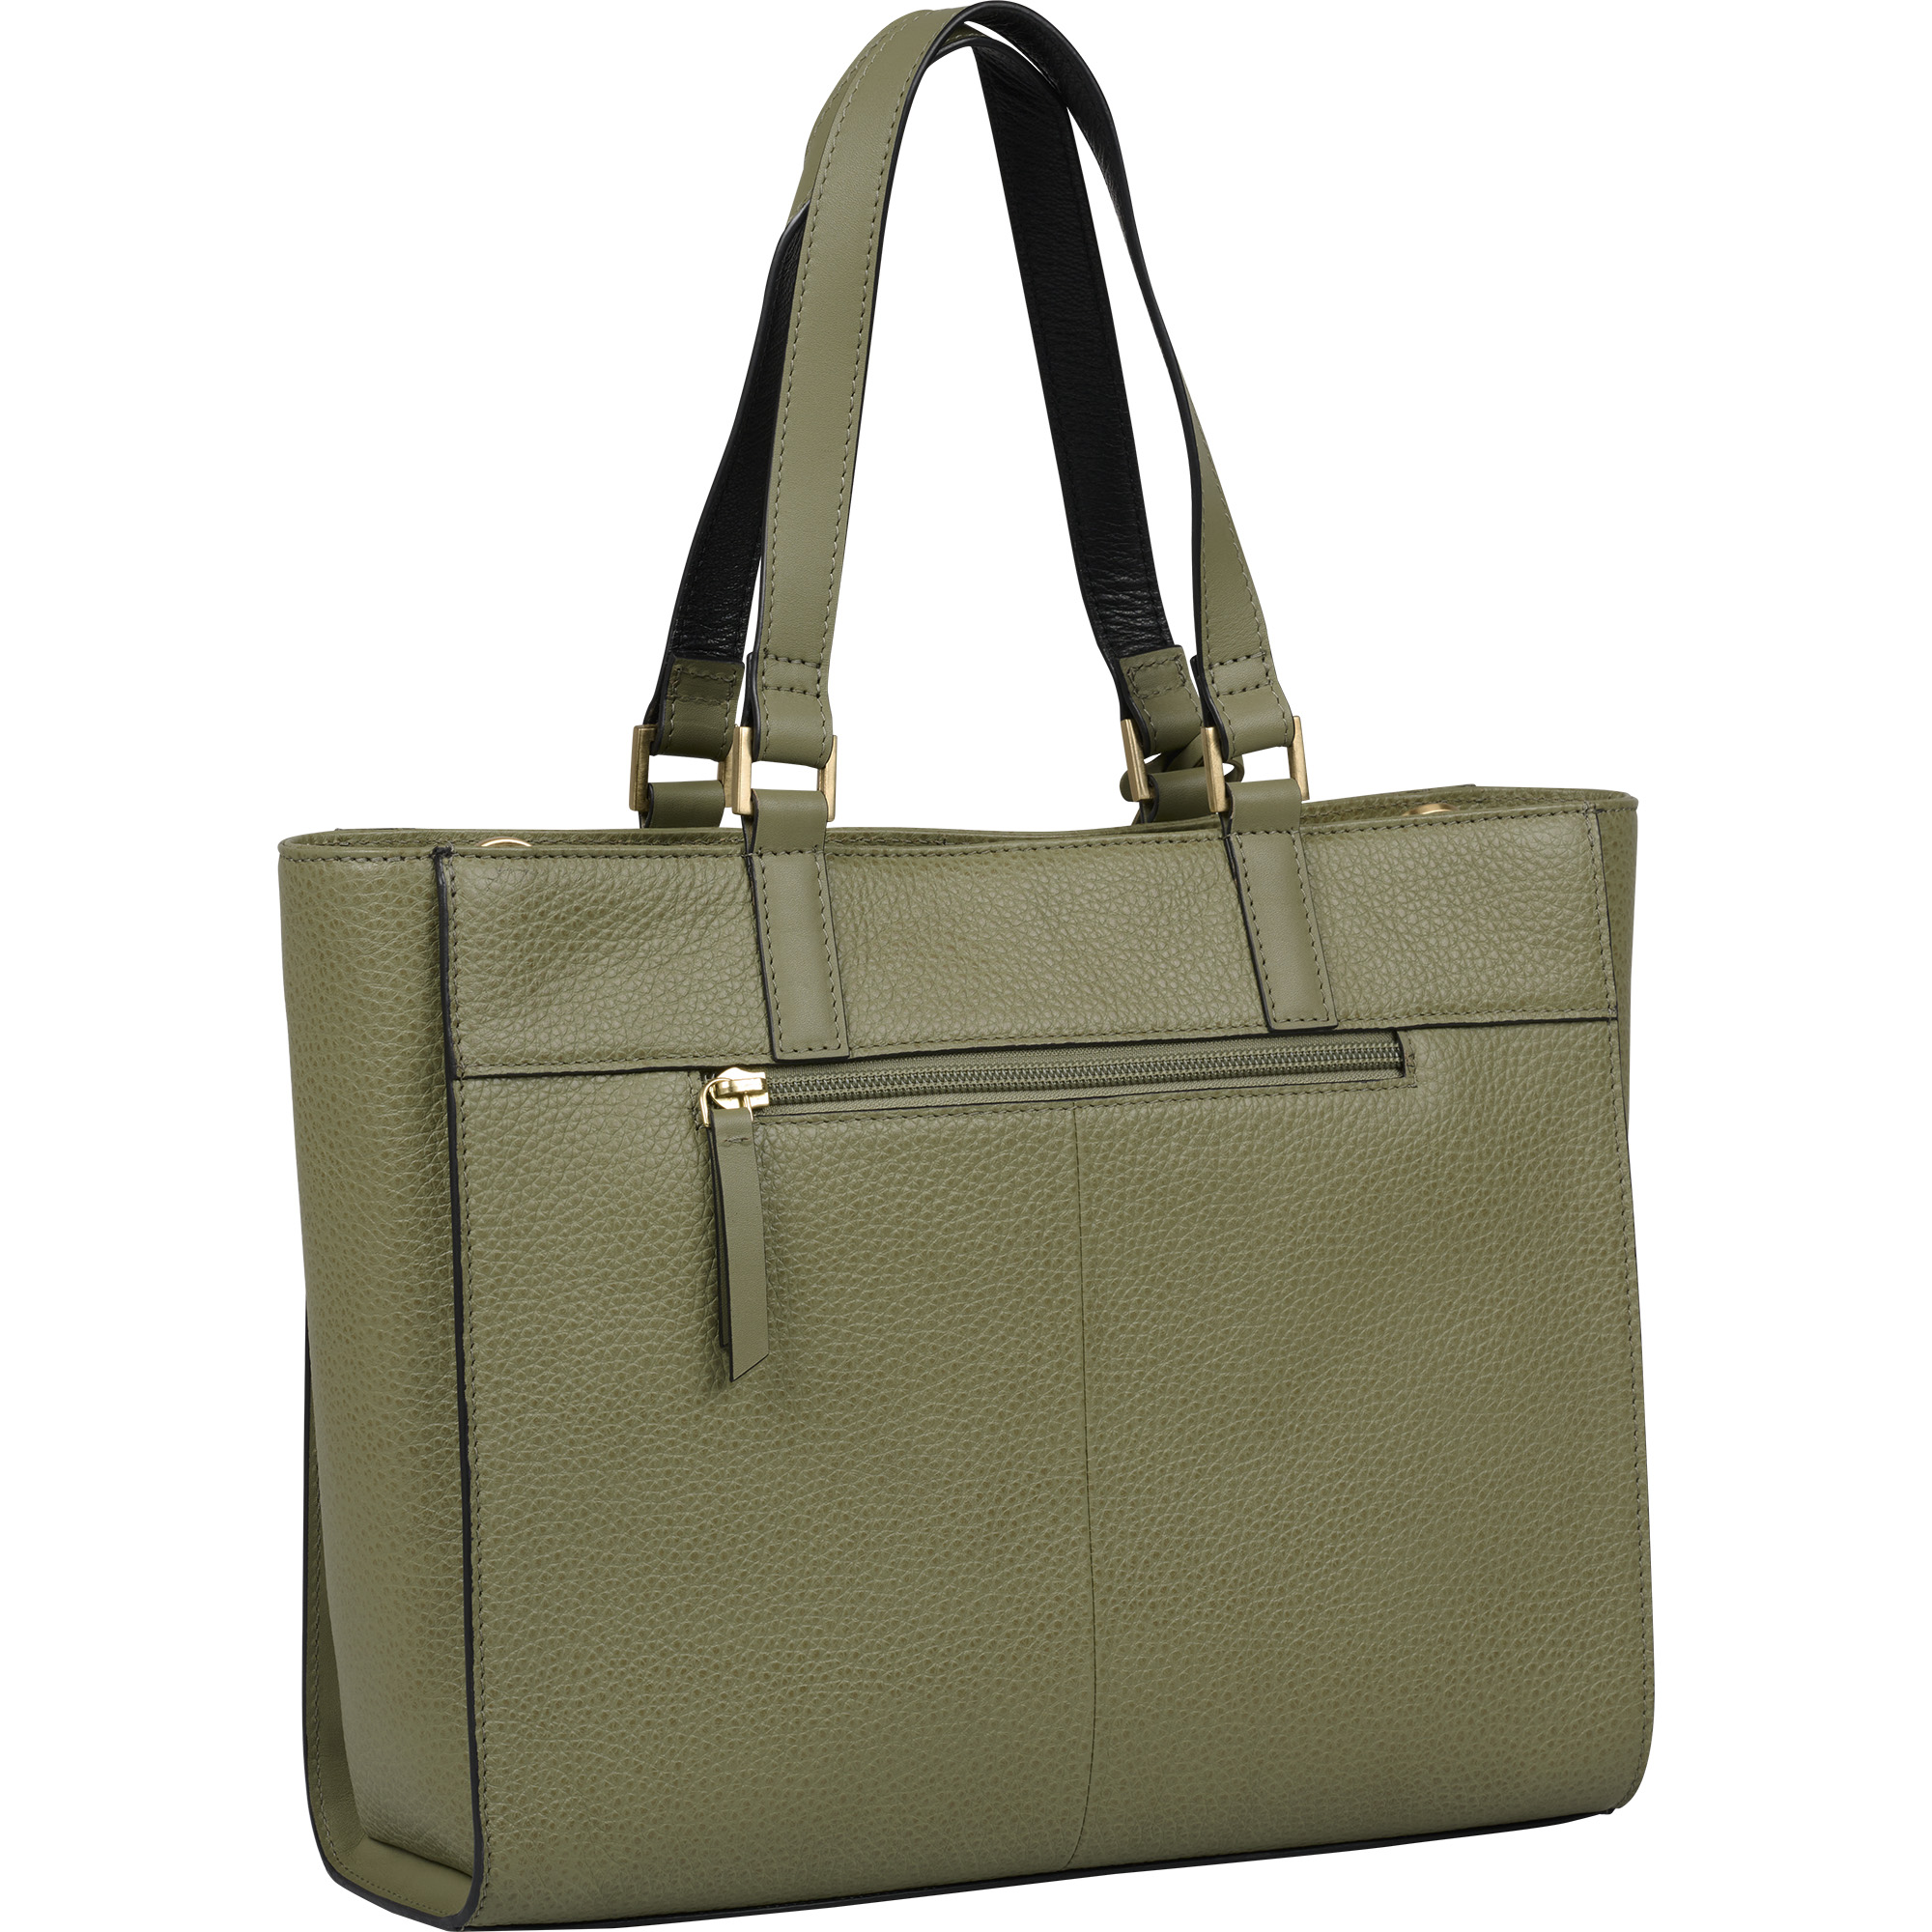 Burkely 1000624 Handbag 41.72 Light Green